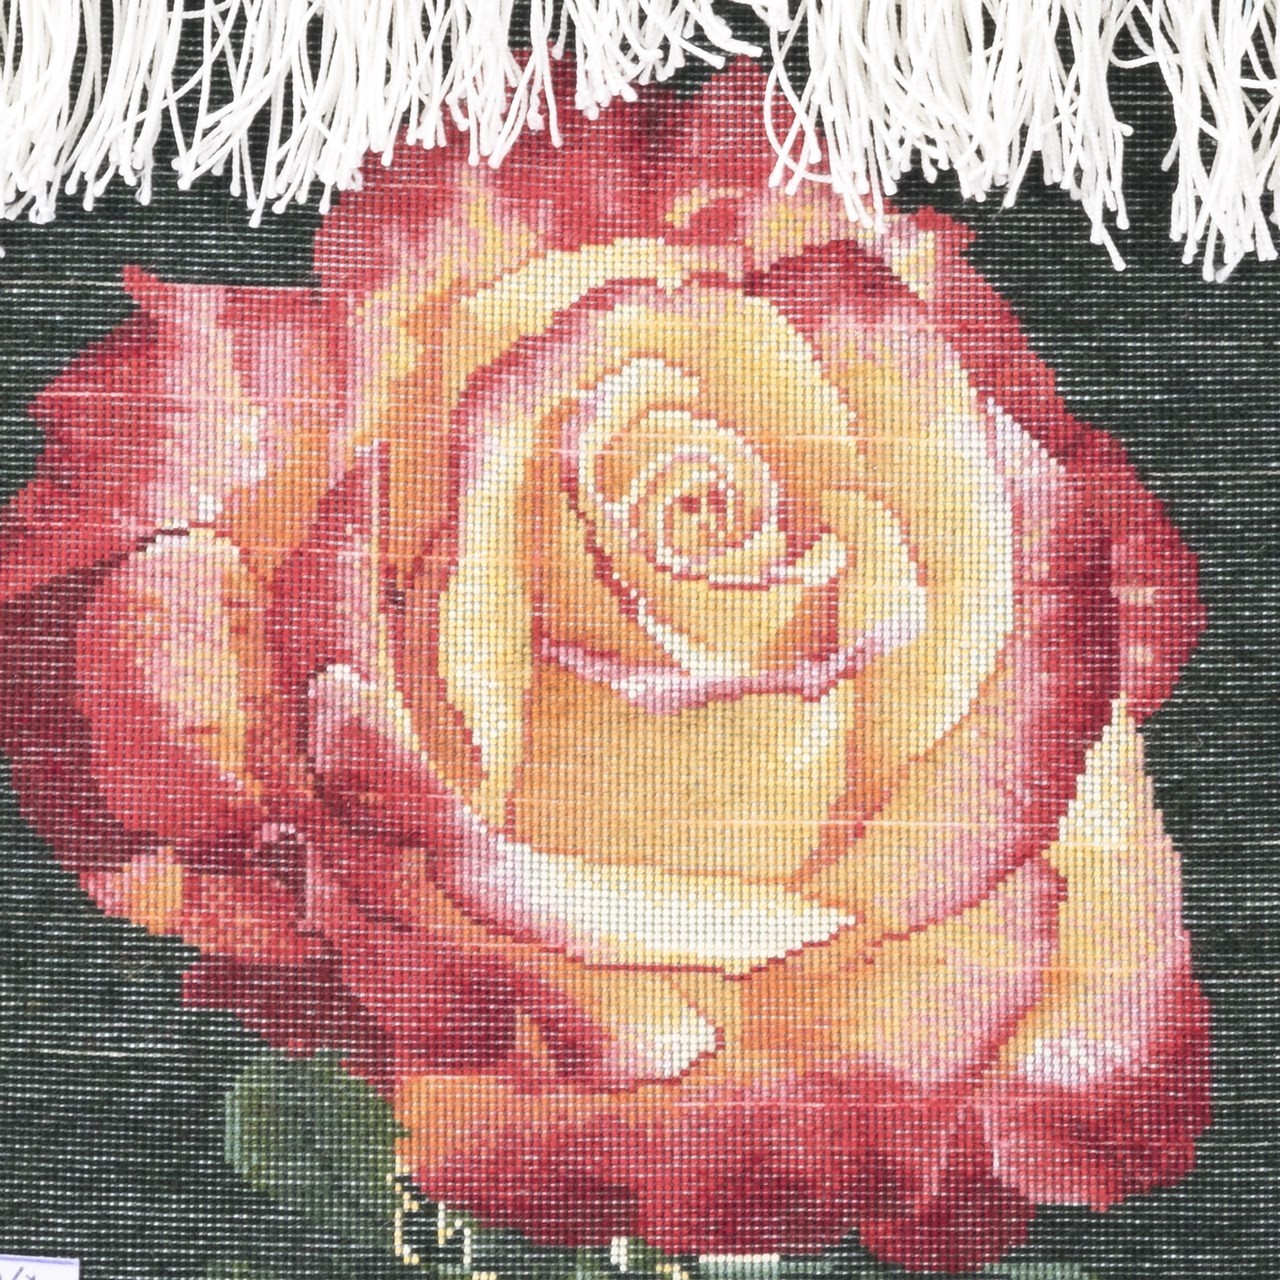 تابلو فرش دستبافت طرح یک شاخه گل رز کد 901382